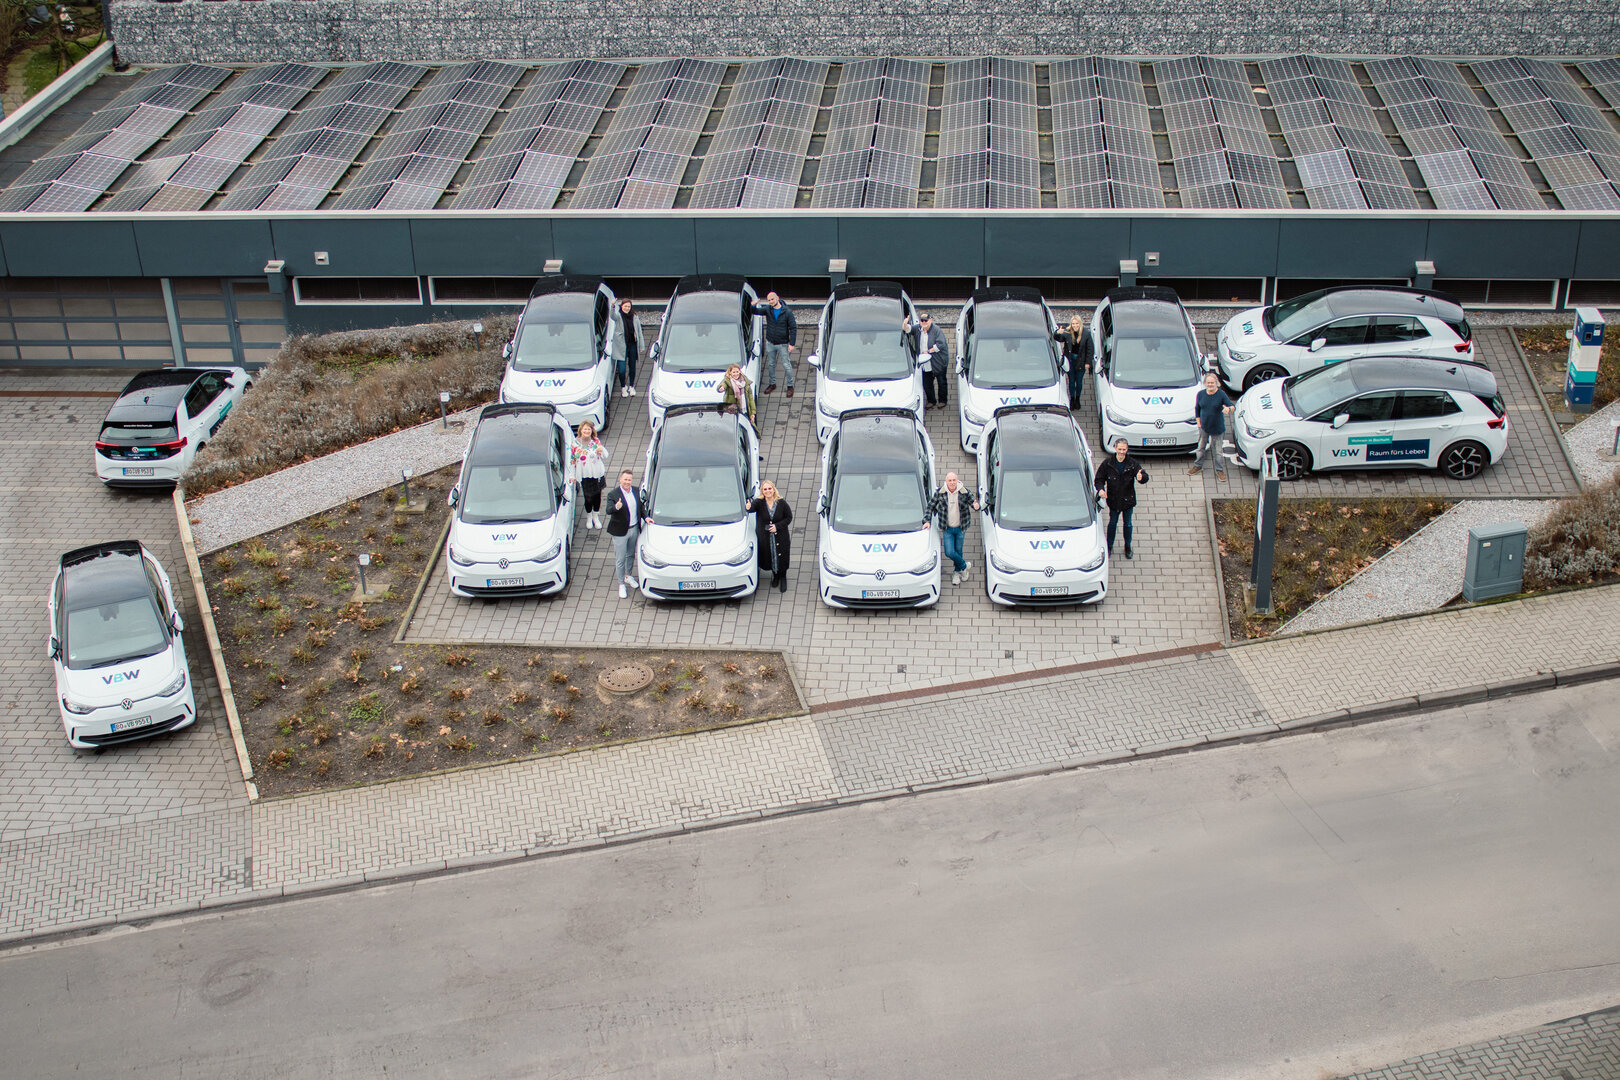 VBW-Mitarbeitende freuen sich über die neue E-Fahrzeugflotte, die neben der E-Ladesäule und der Photovoltaik-Anlage steht.